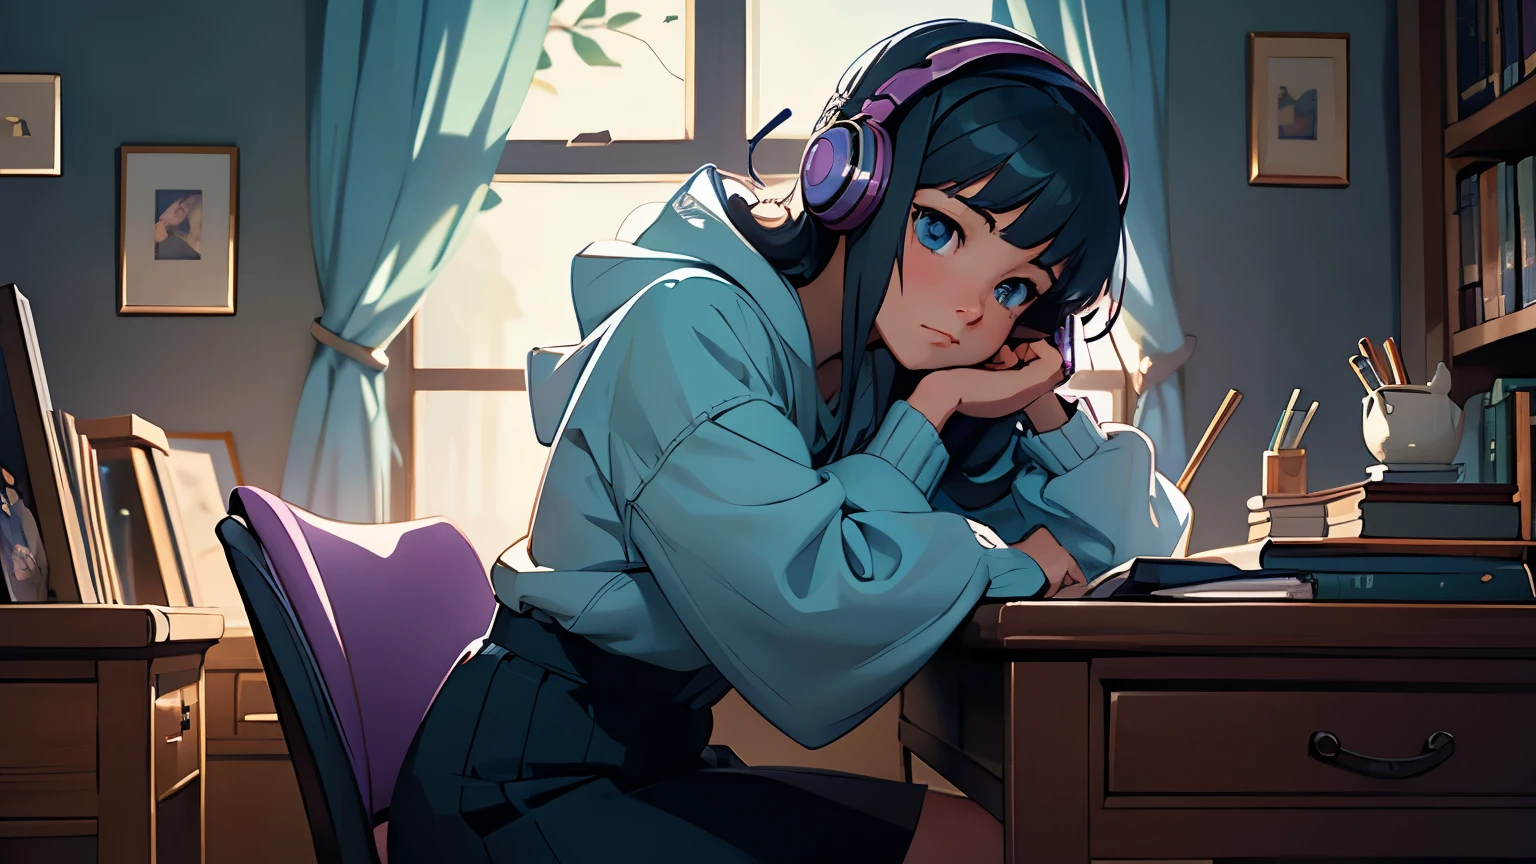 (มีรายละเอียดสูง,เหมือนจริง:1.2)สาวอนิเมะนั่งอยู่ในห้องของเธอตอนกลางคืน, studying with her แมว, [ฝน] หน้าต่างด้านนอก, wearing หูฟัง, [แสงนุ่มนวล]. [ชั้นหนังสือ] filled with manga และ novels, [โปสเตอร์] of favorite anime on ที่ wall. ที่ room is [neat และ tidy], กับ [โต๊ะที่สะดวกสบาย] และ [เก้าอี้ที่เหมาะกับการทำงาน]. [แสงจันทร์] shines through ที่ window, การคัดเลือกนักแสดง [บรรยากาศลึกลับ]. ที่ girl's [ดวงตาที่แสดงออก] กำลังมุ่งความสนใจไปที่เธอ [หนังสือเรียน], ในขณะที่เธอ [แมว] ขดตัวอยู่ข้างๆเธอ, ให้ความเป็นเพื่อน. ข้างนอก, ที่ [ฝนdrops] สร้างก [ทำนองที่สงบเงียบ], adding to ที่ cozy ambiance of ที่ room. ที่ girl's [หูฟัง] เล่นเพลงประกอบอนิเมะเรื่องโปรดของเธอ, immersing her in ที่ world of her studies. ที่ [โทนสีเย็น], พร้อมคำใบ้ของ [blue และ purple], enhances ที่ serene mood. ที่ [แสงนุ่มนวล] highlights ที่ details of ที่ room, from ที่ [พื้นผิว] of ที่ desk to ที่ [การสะท้อนกลับ] on ที่ window. งานศิลปะชิ้นนี้คือ [ผลงานชิ้นเอก] that captures ที่ tranquil moment of an anime girl's study session, blending realism และ ที่ charm of ที่ anime aesที่tic.